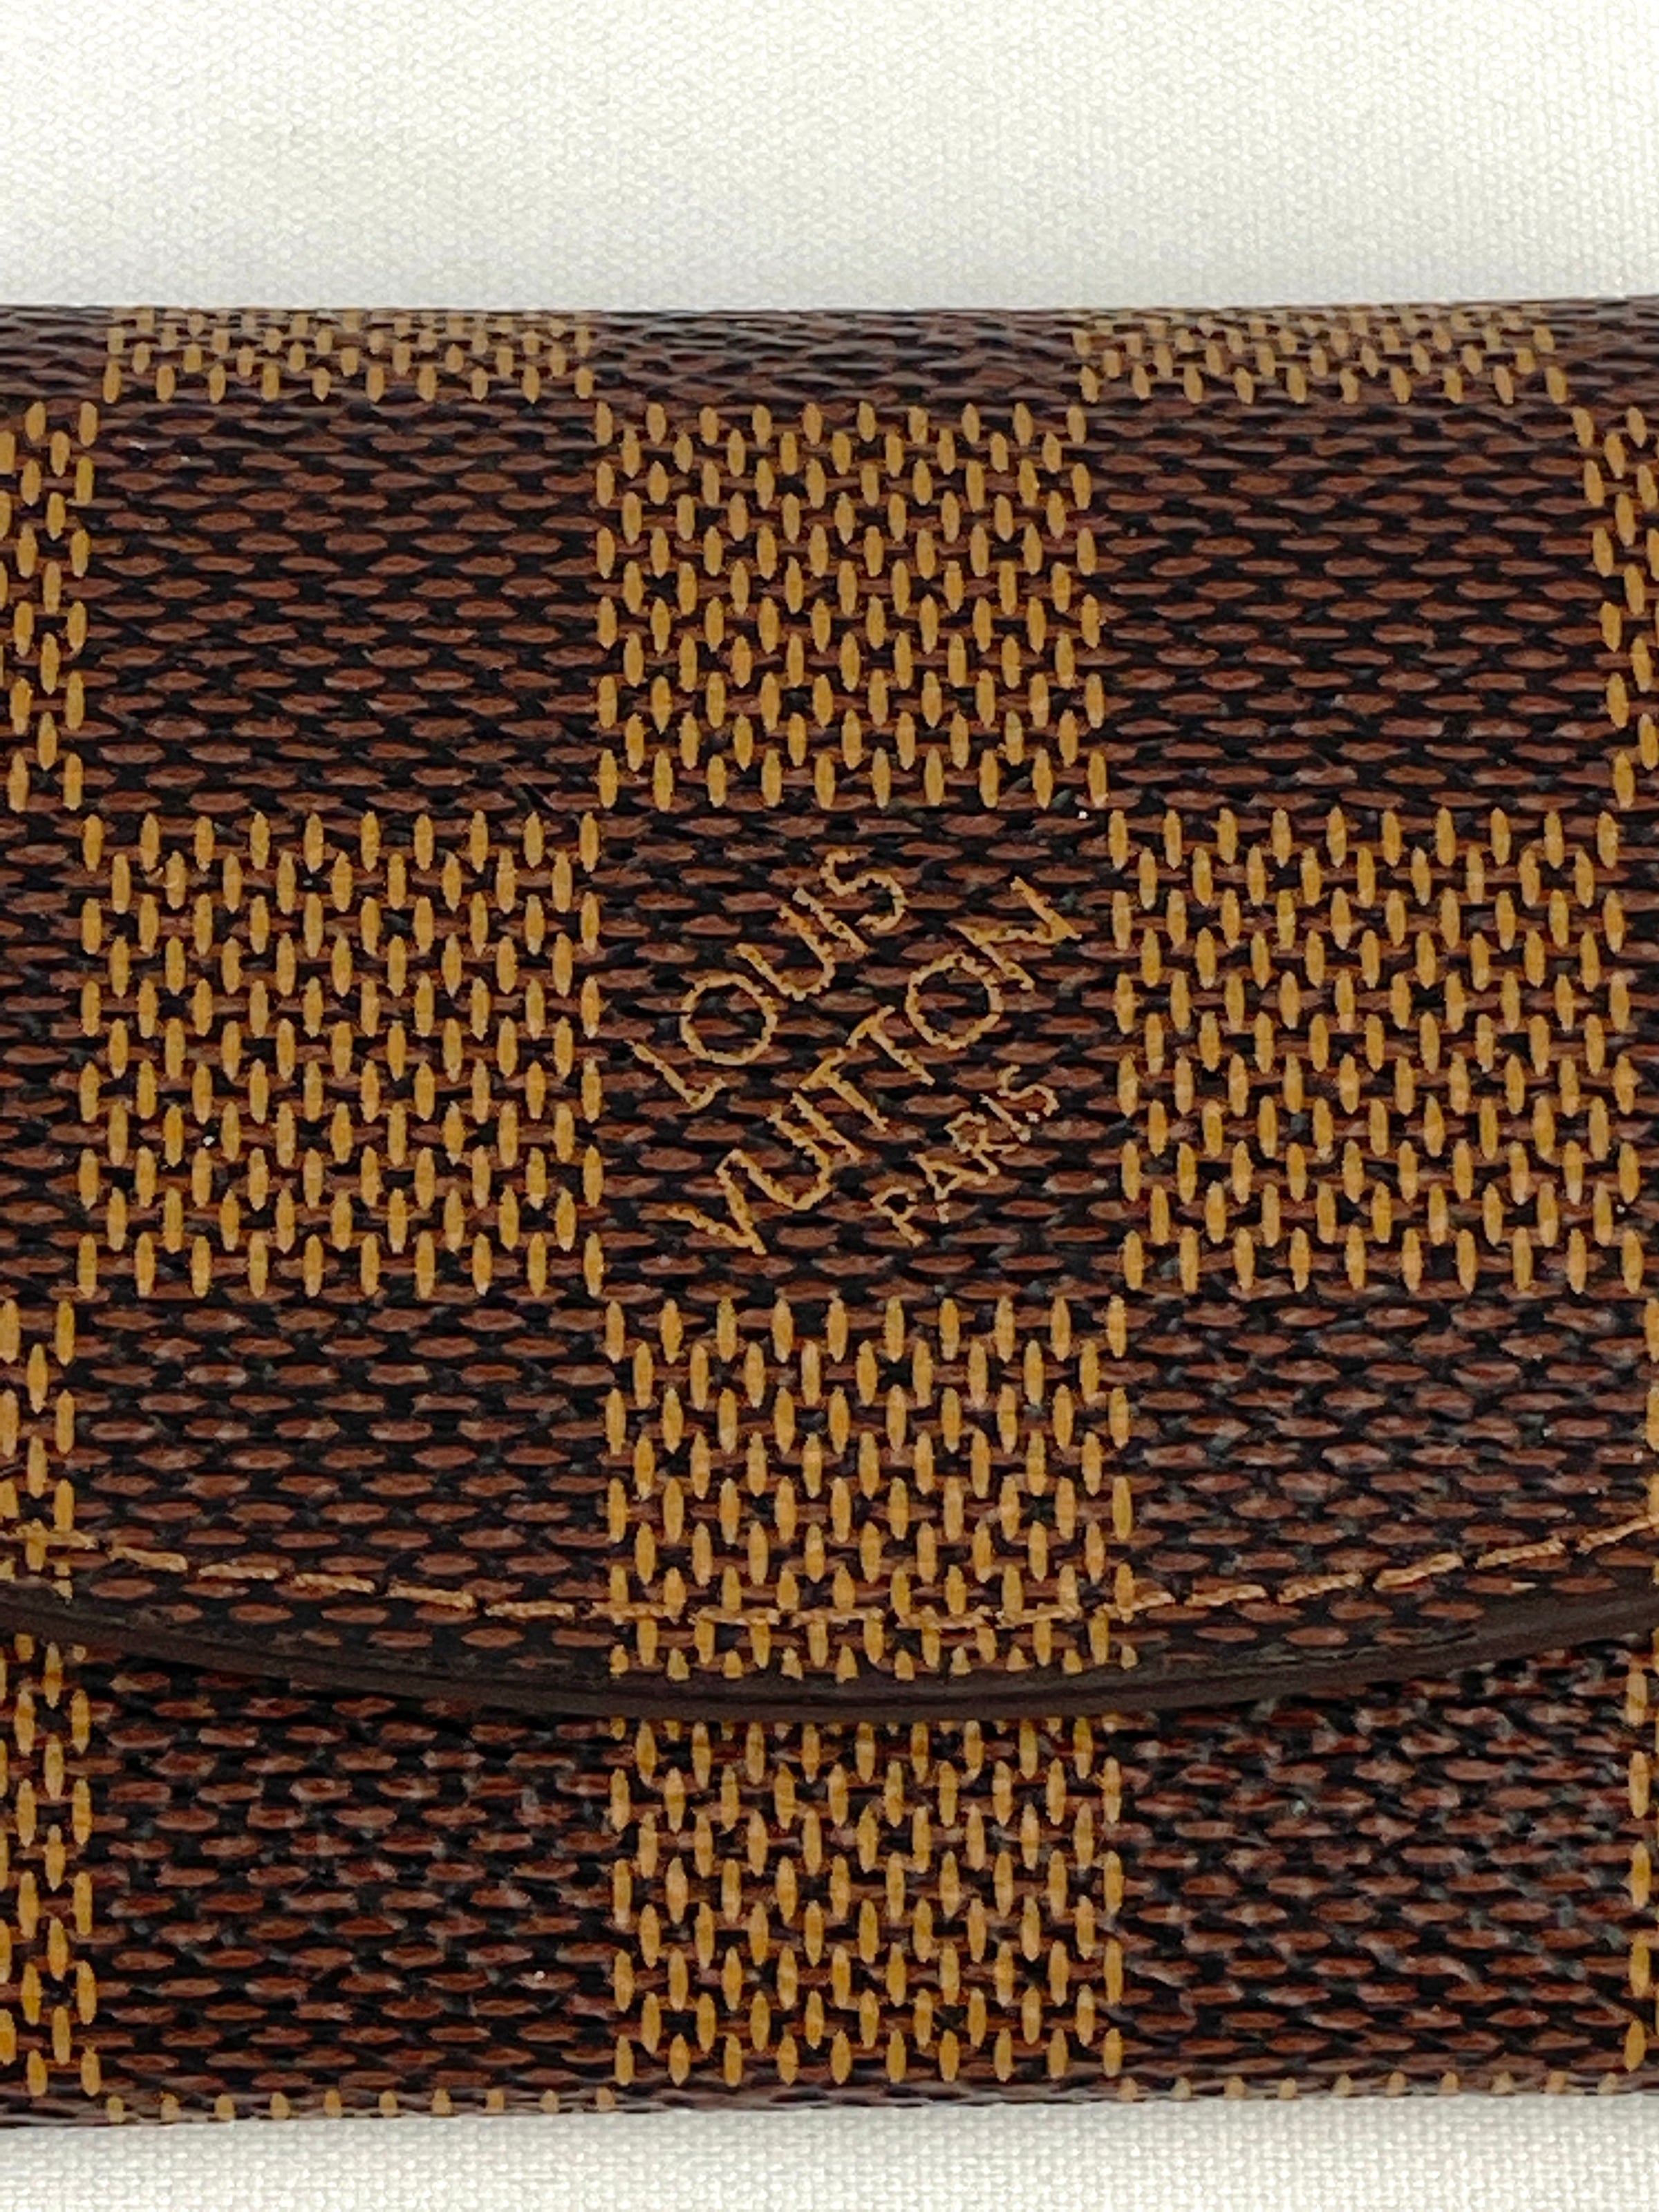 Shop Louis Vuitton Champs elysées cufflinks (M65043) by えぷた